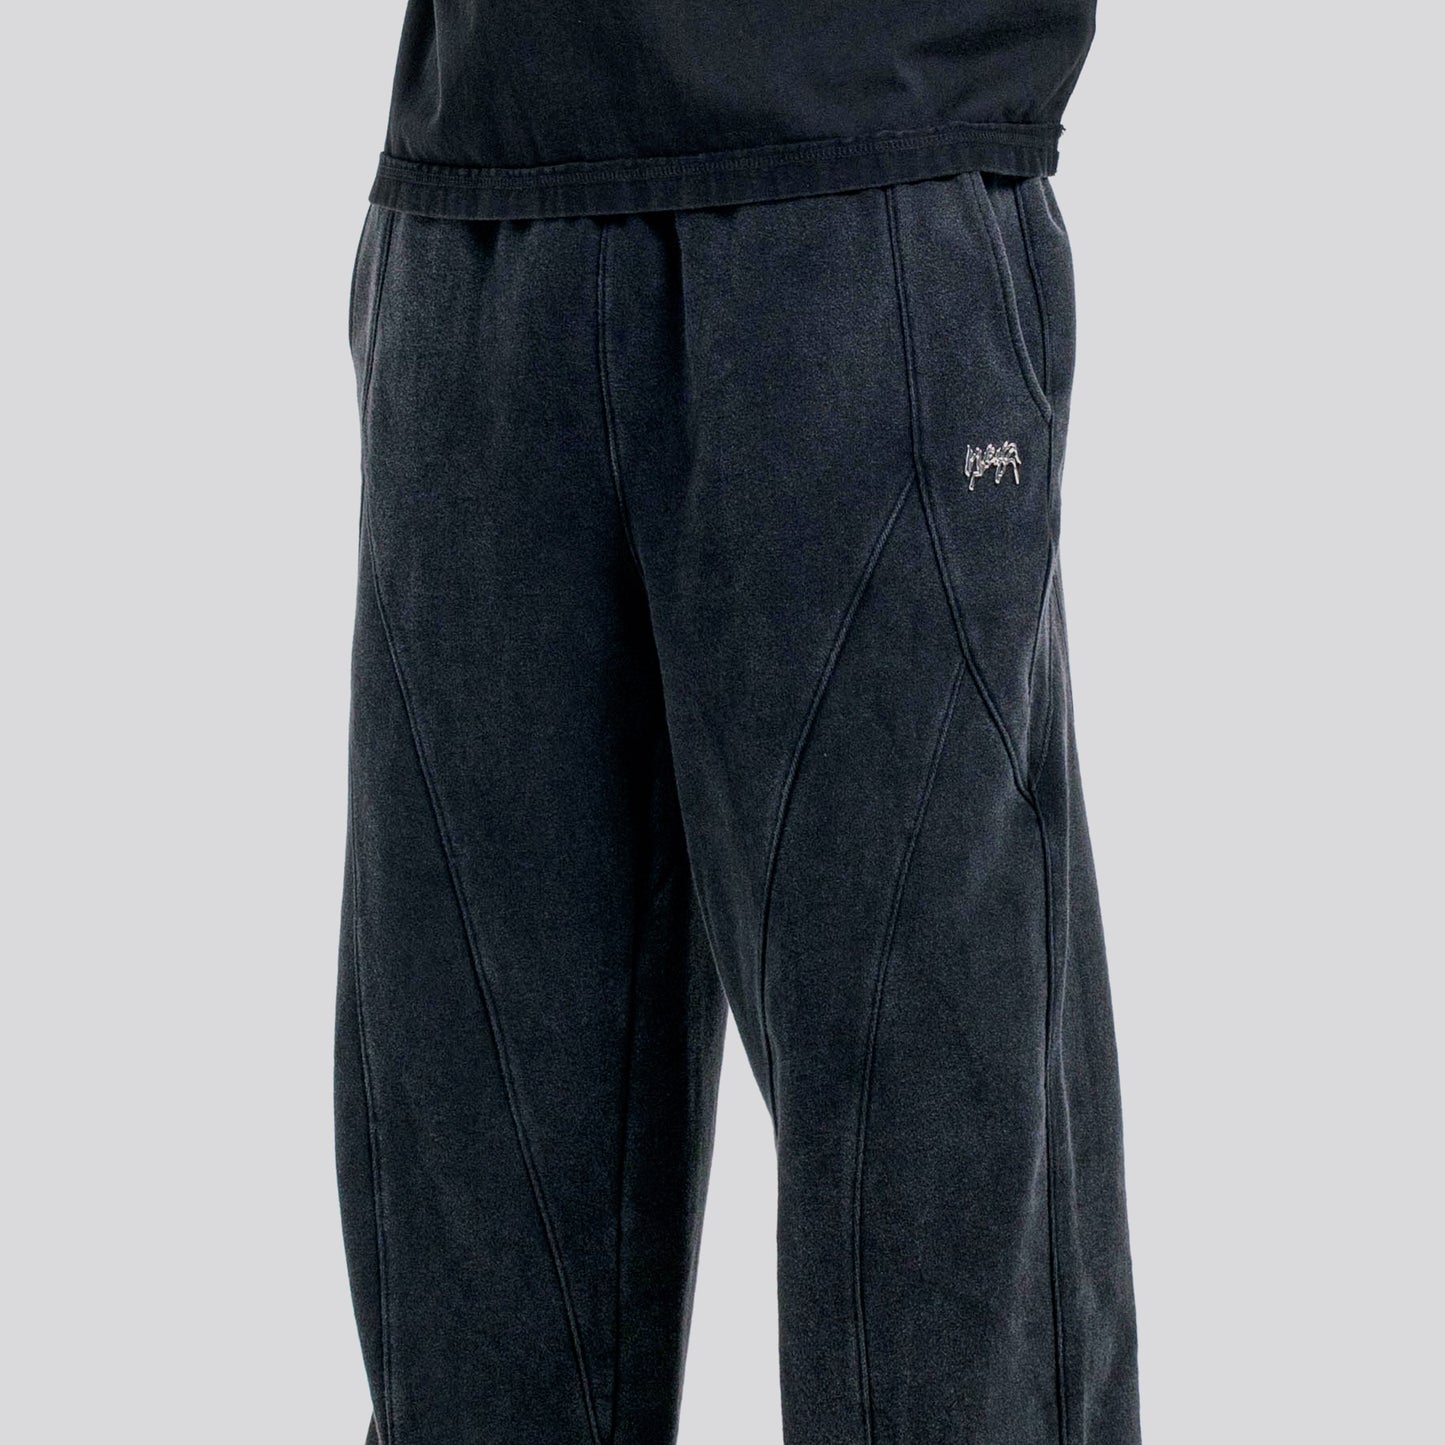 Vintage Jogger Pants Weyz - Black